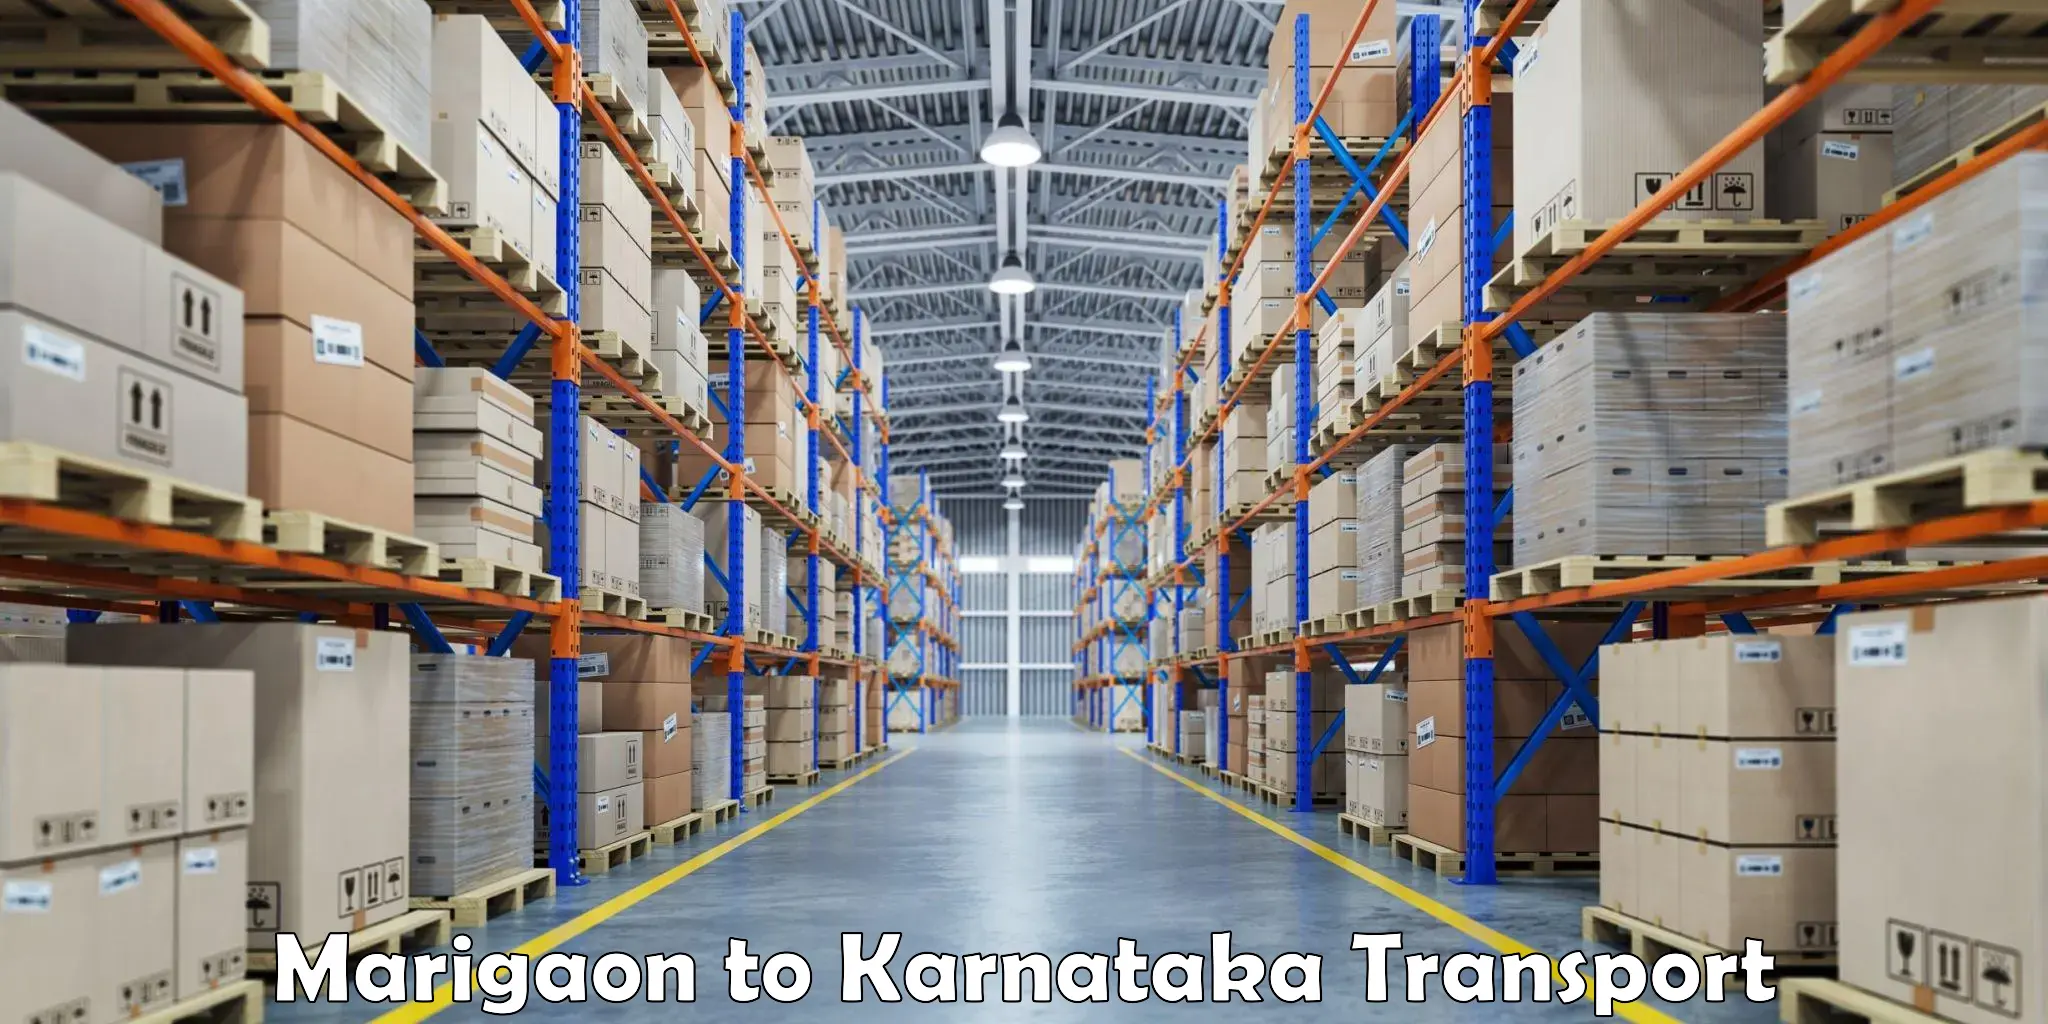 Furniture transport service Marigaon to Kora Tumkur